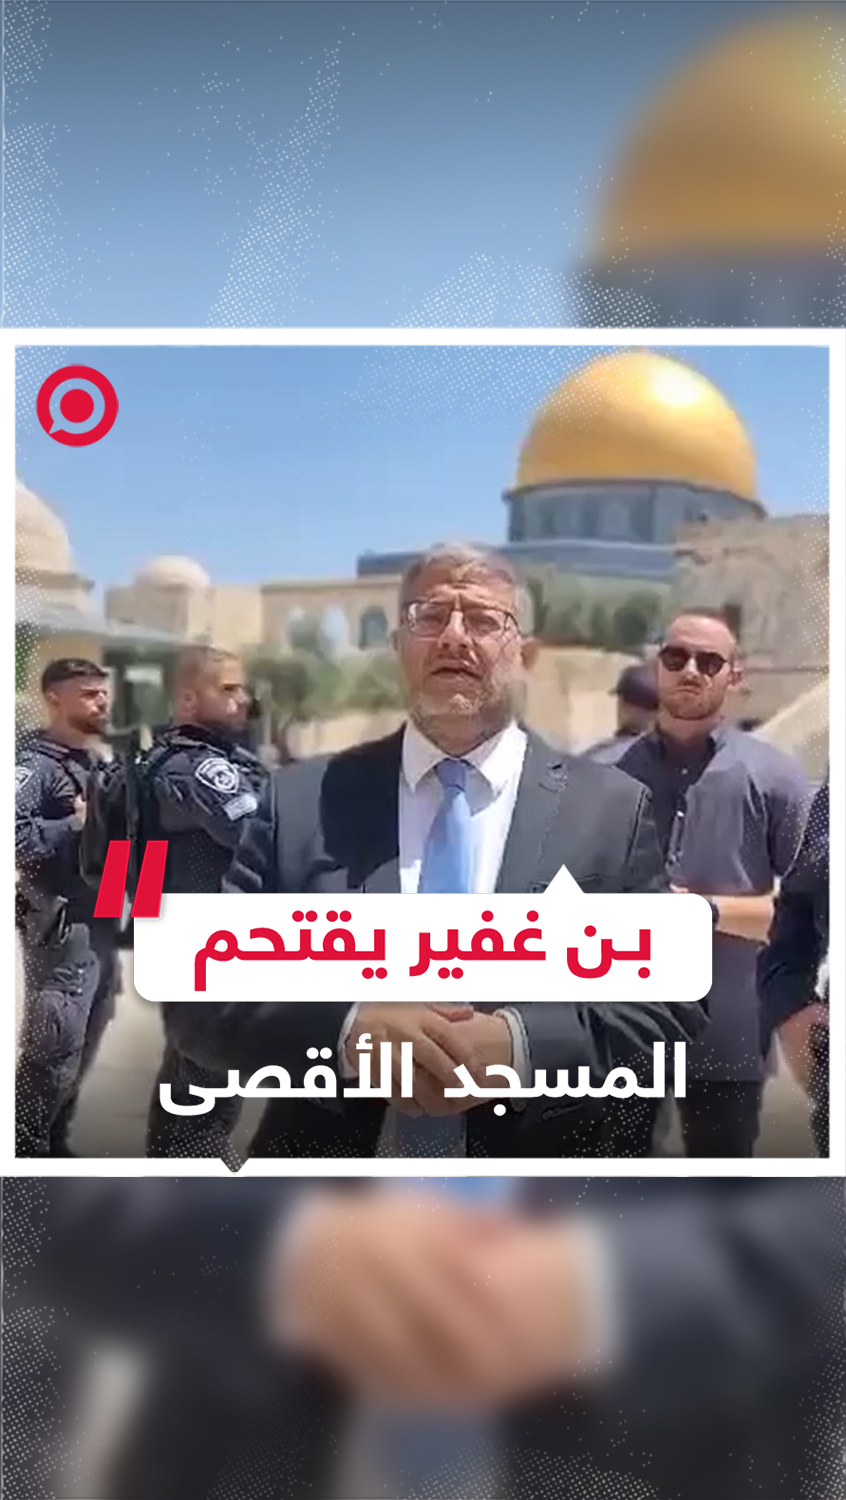 وزير الأمن القومي الإسرائيلي إيتمار بن غفير يقتحم المسجد الأقصى